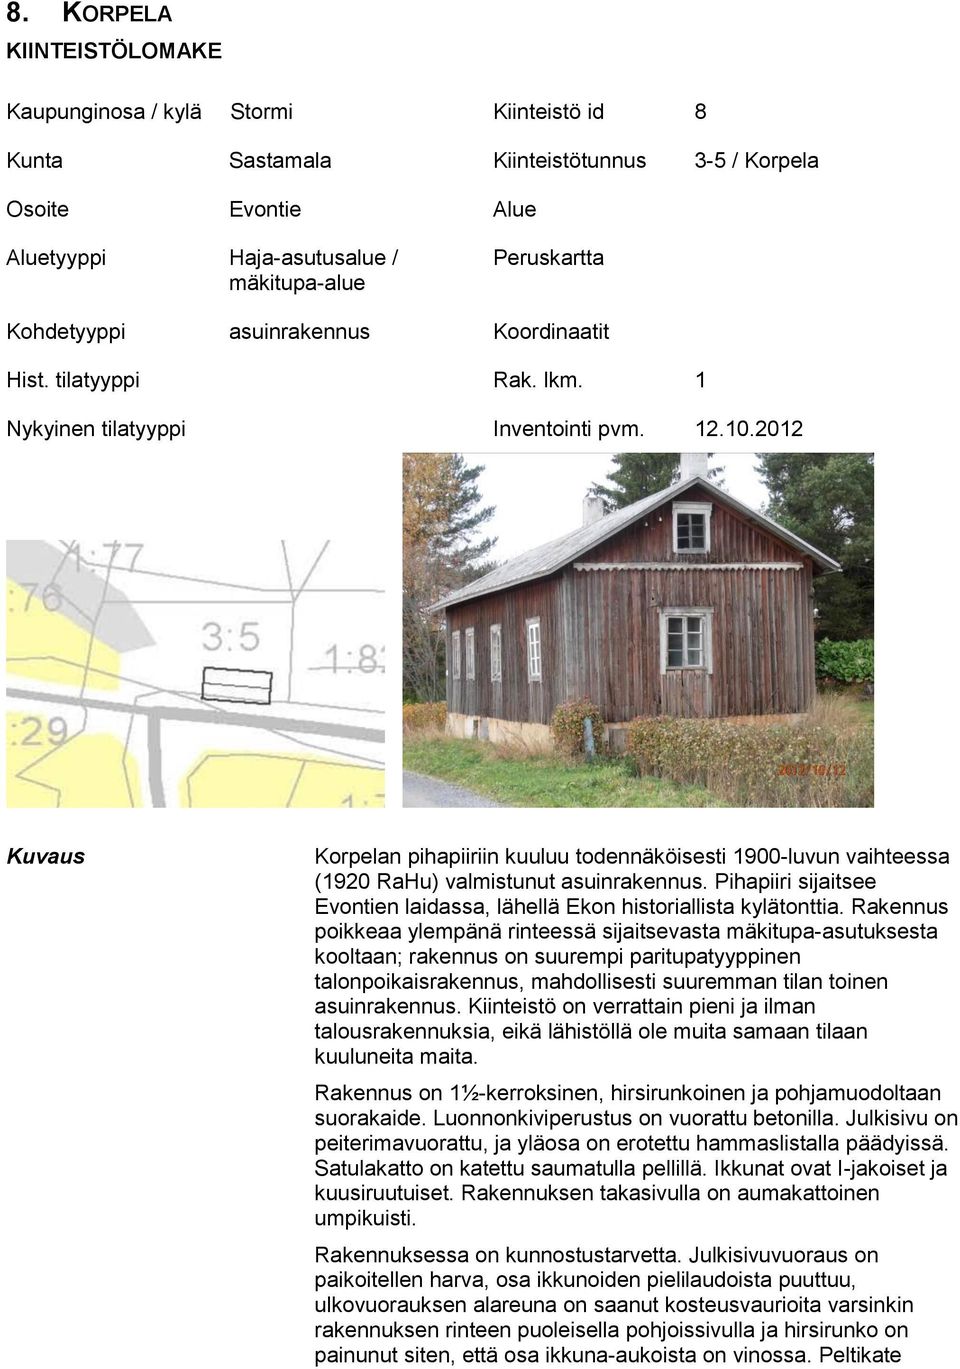 2012 Kuvaus Korpelan pihapiiriin kuuluu todennäköisesti 1900-luvun vaihteessa (1920 RaHu) valmistunut asuinrakennus. Pihapiiri sijaitsee Evontien laidassa, lähellä Ekon historiallista kylätonttia.